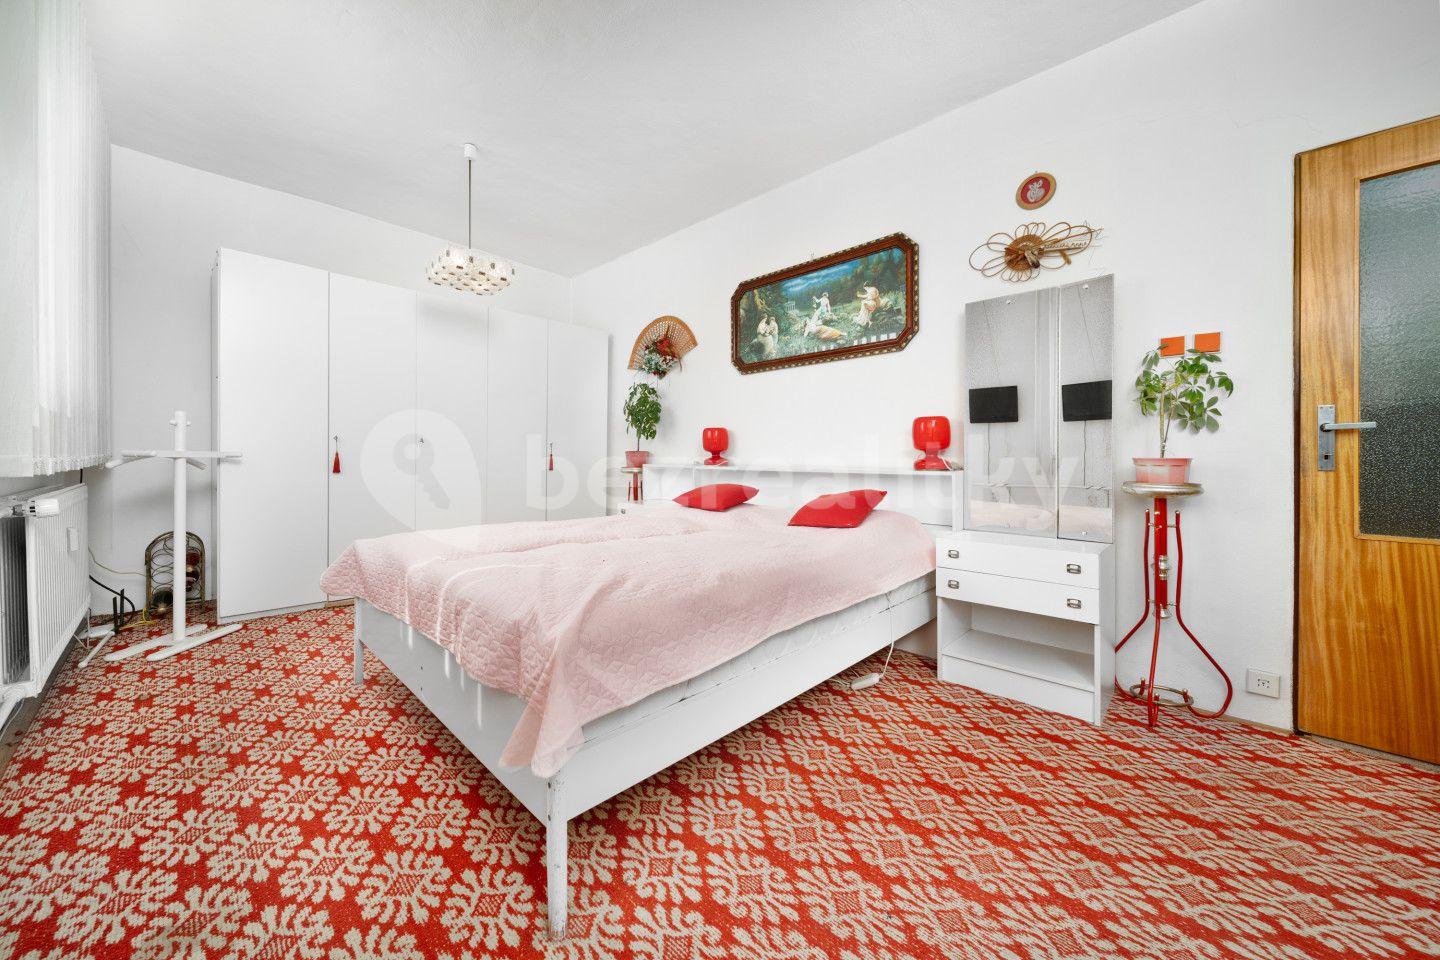 3 bedroom flat for sale, 71 m², Vrbová, Ústí nad Orlicí, Pardubický Region